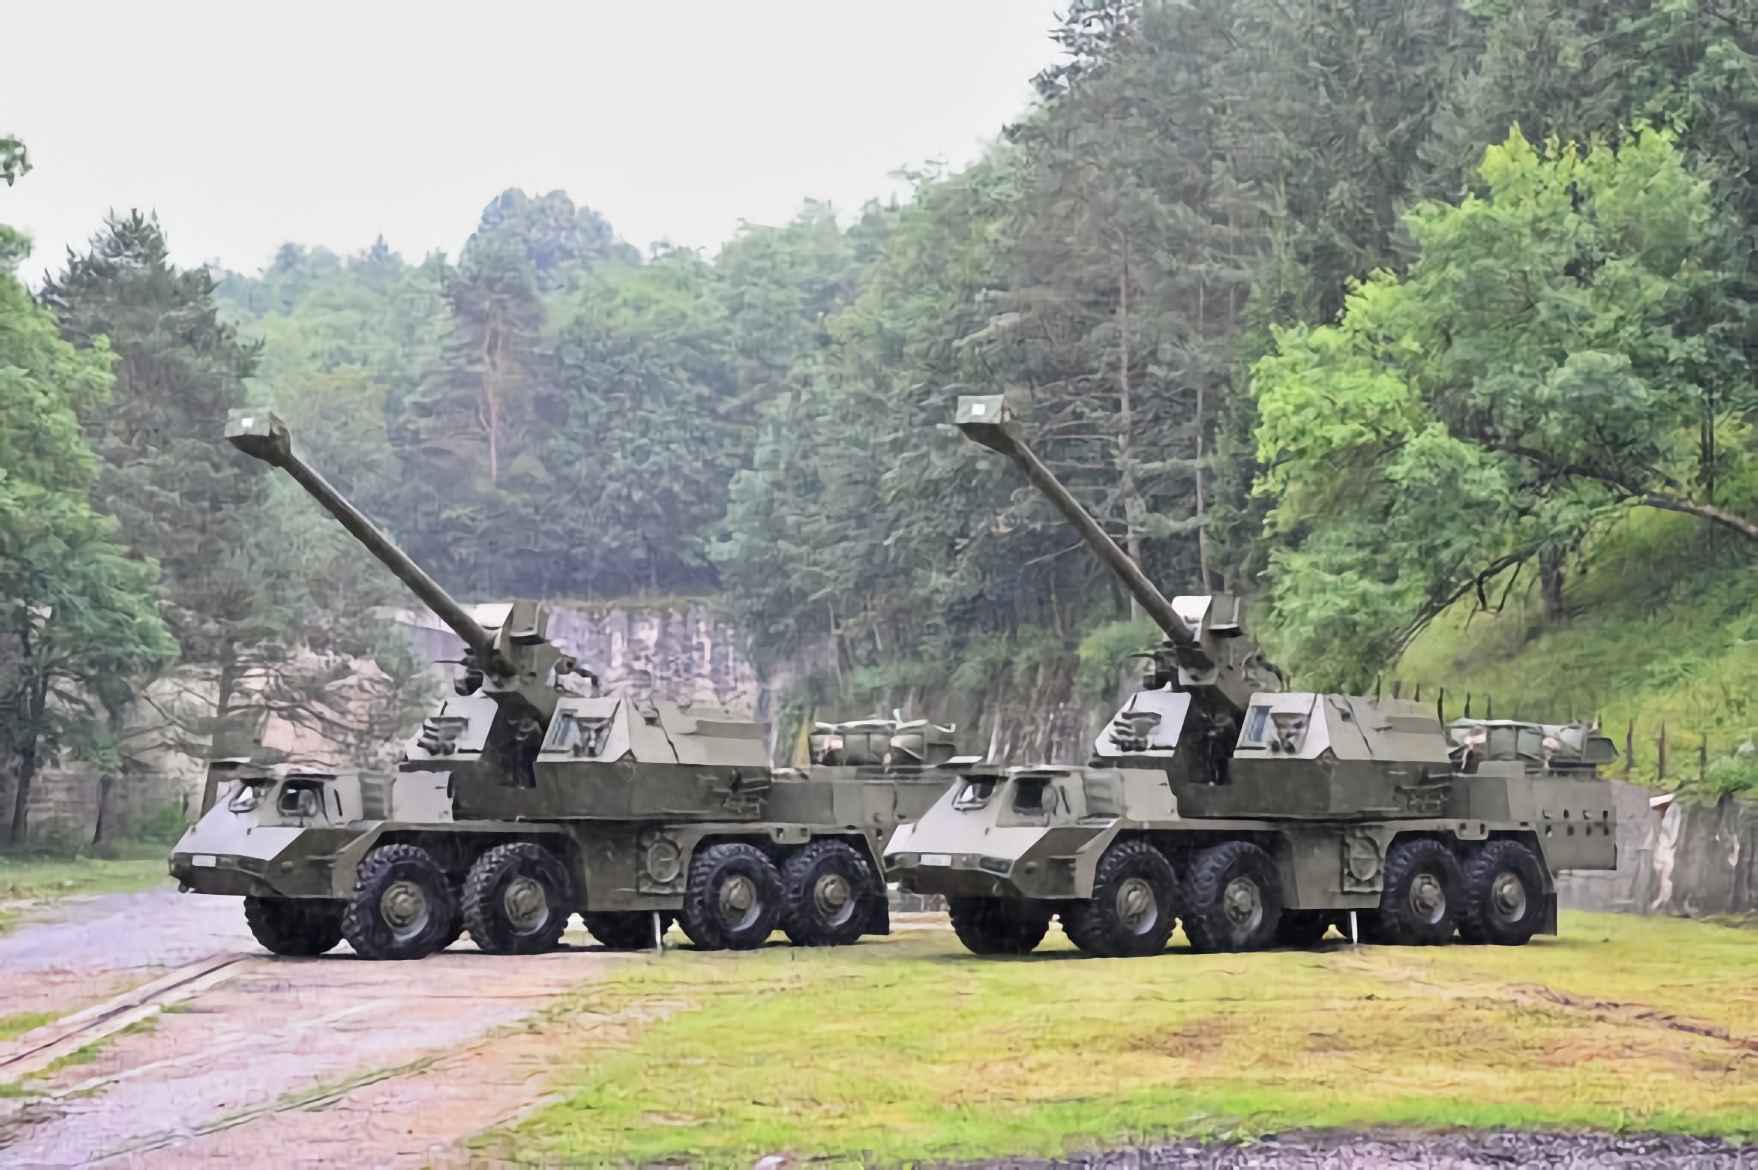 Słowacja przekazała pierwsze dwie samobieżne jednostki artyleryjskie Zuzana 2 ukraińskim siłom zbrojnym w ramach kontraktu o wartości 90 mln euro.